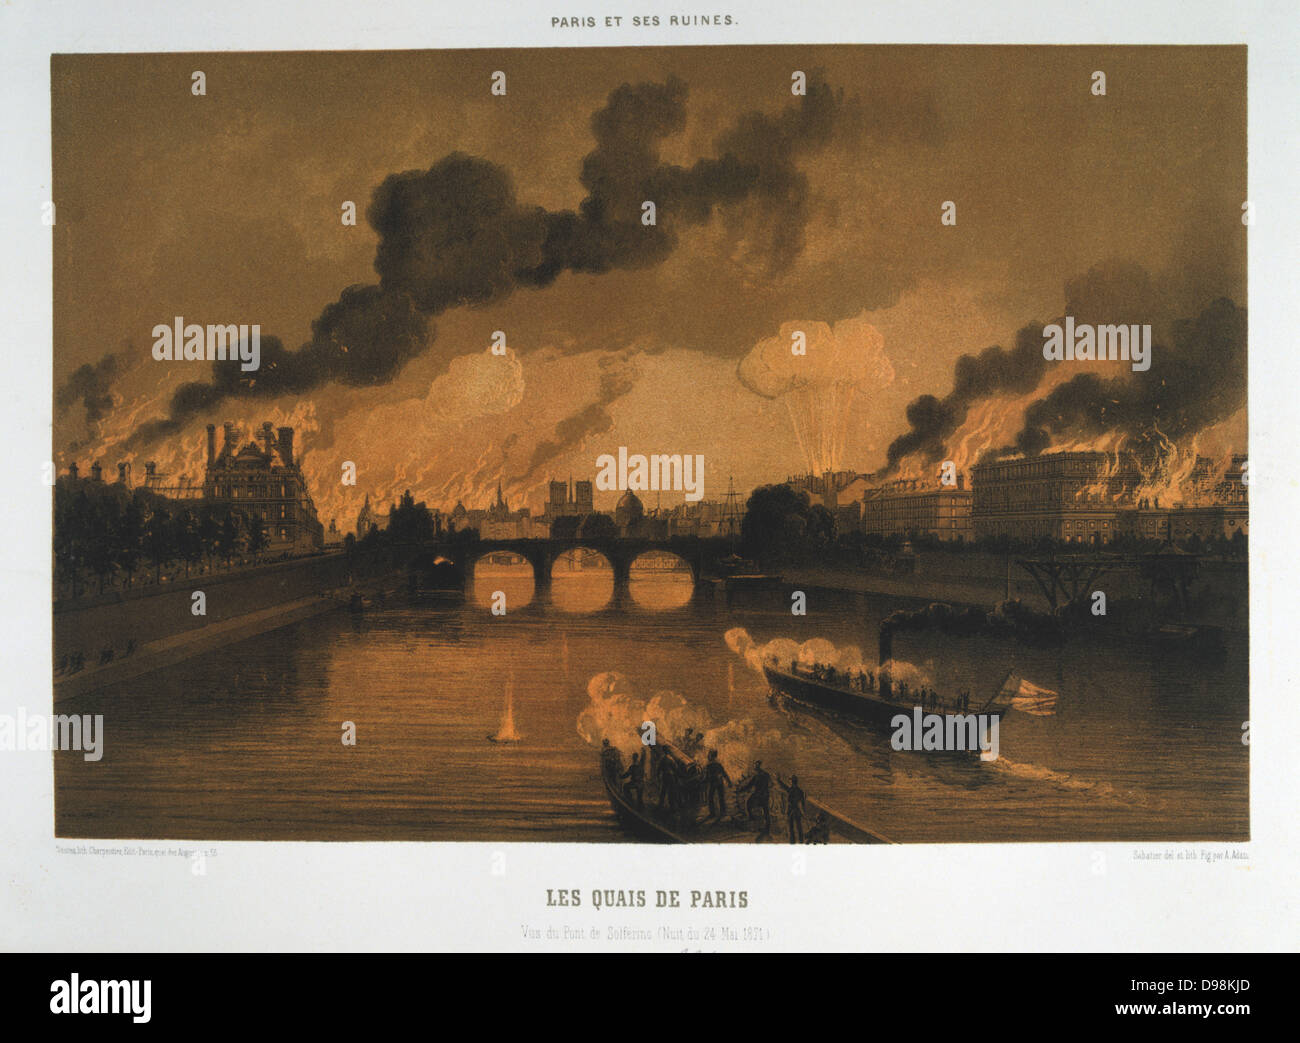 Comuna de París el 26 de marzo-28 de mayo de 1871. La semana sangrienta: Los muelles de París, vista del Pont Solferino en la noche del 24 de mayo, París en llamas. Litografía. Foto de stock